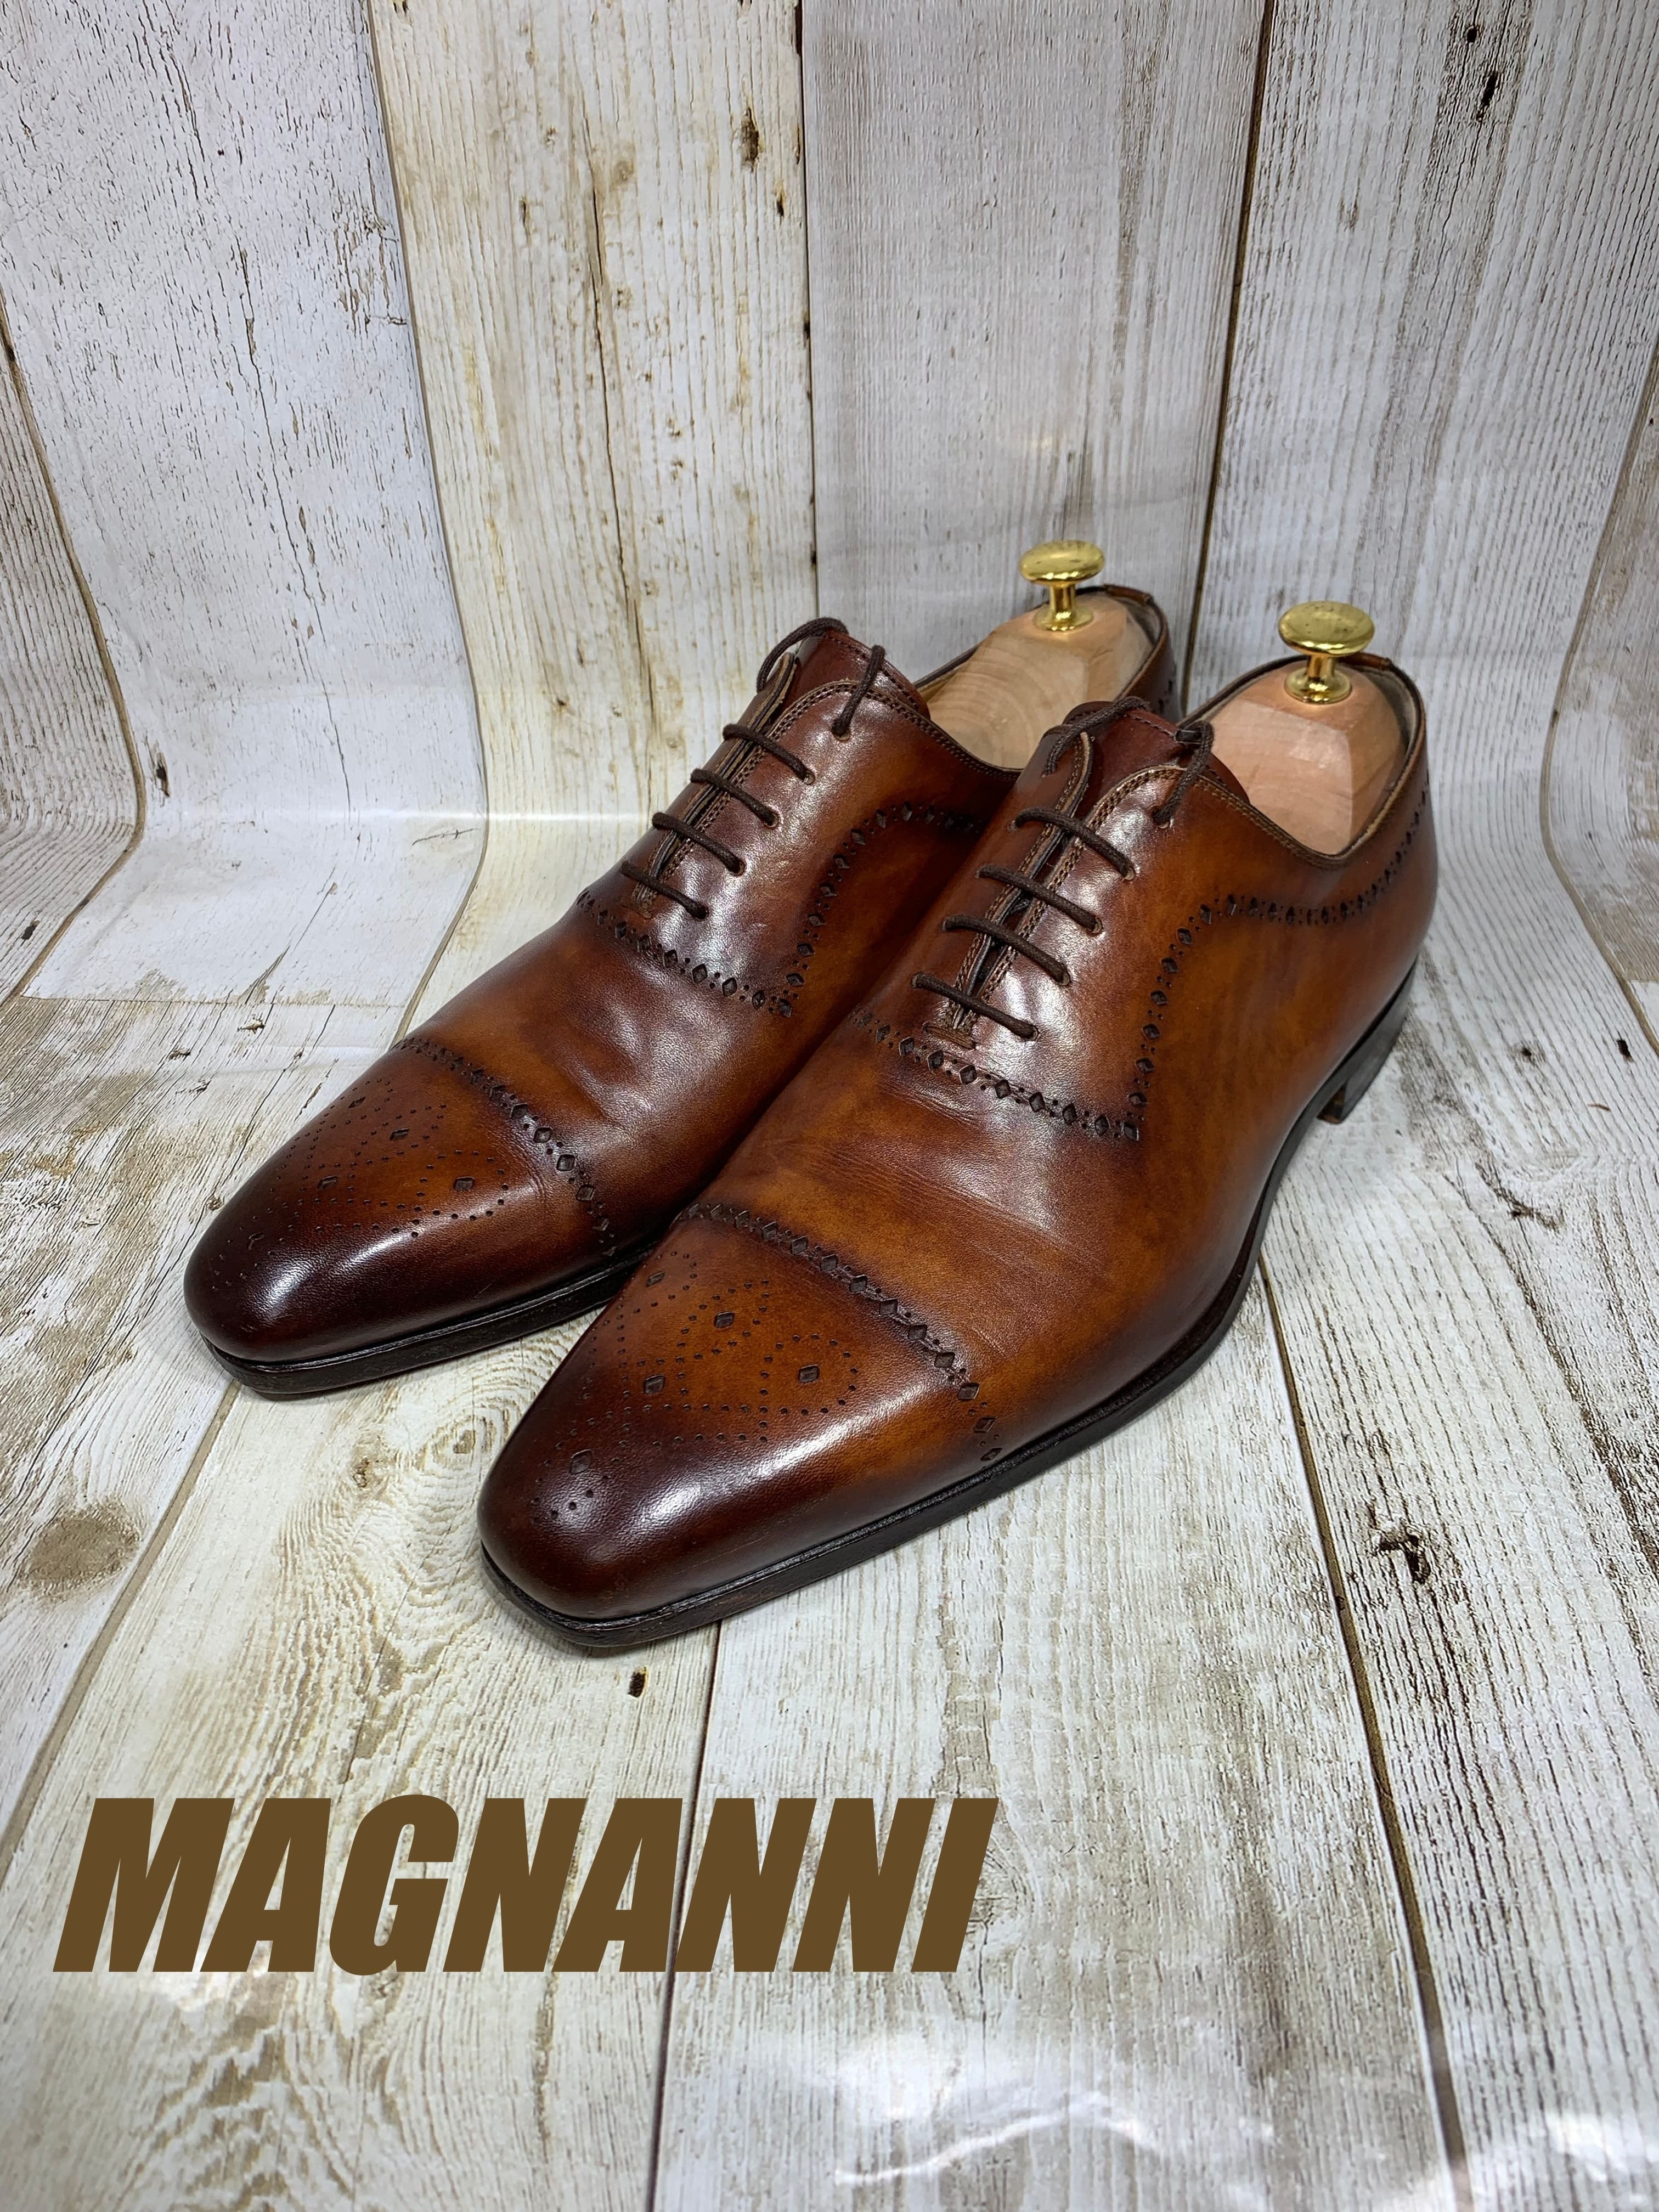 MAGNANNI　マグナーニ　24cm　革靴　ビジネスシューズ　レザー　本革